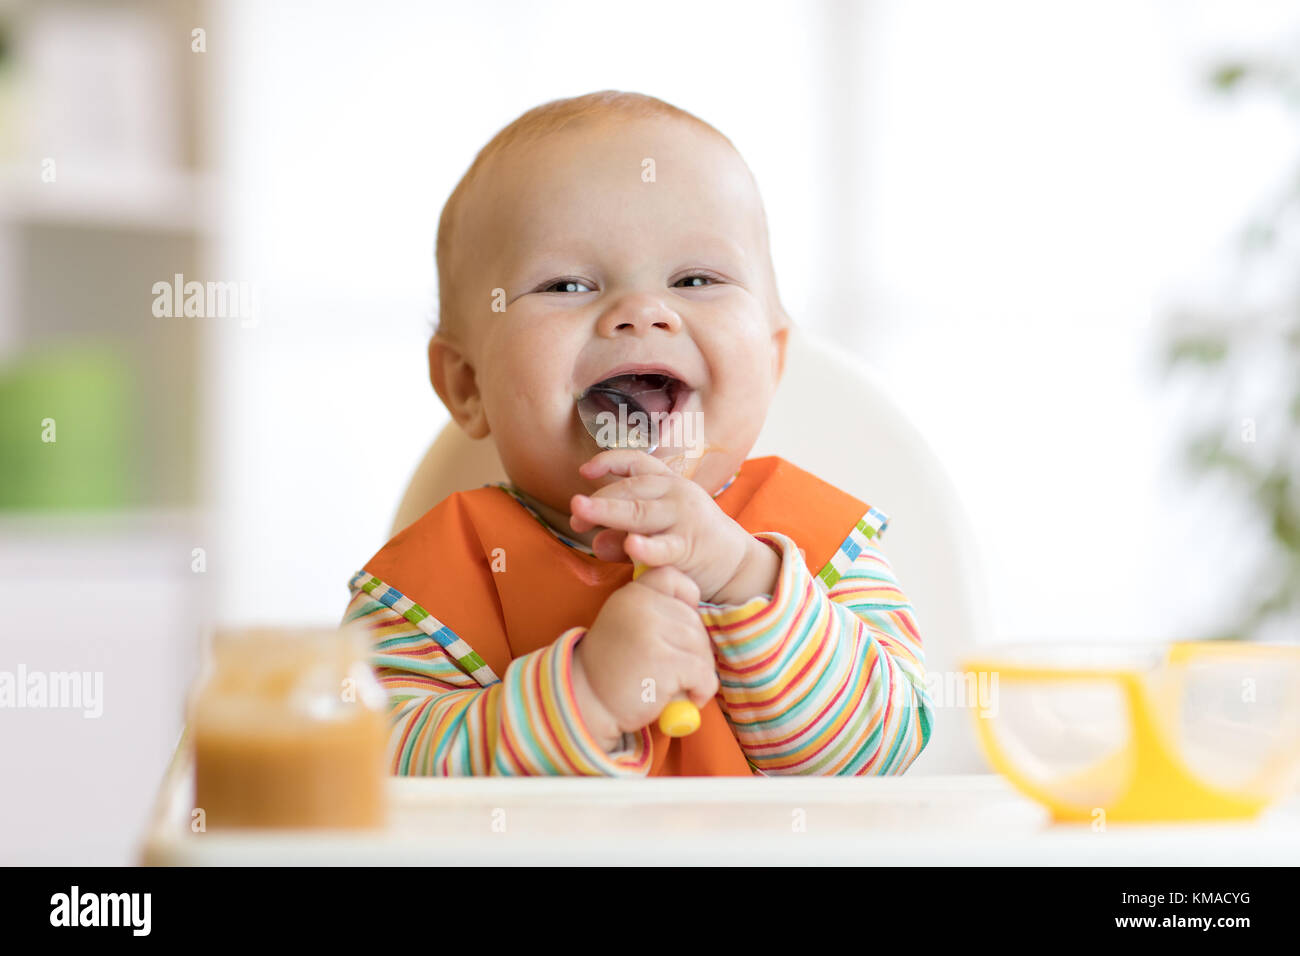 Alegre bebé come alimentos con cuchara. Retrato de niño feliz muchacho en silla alta. Foto de stock